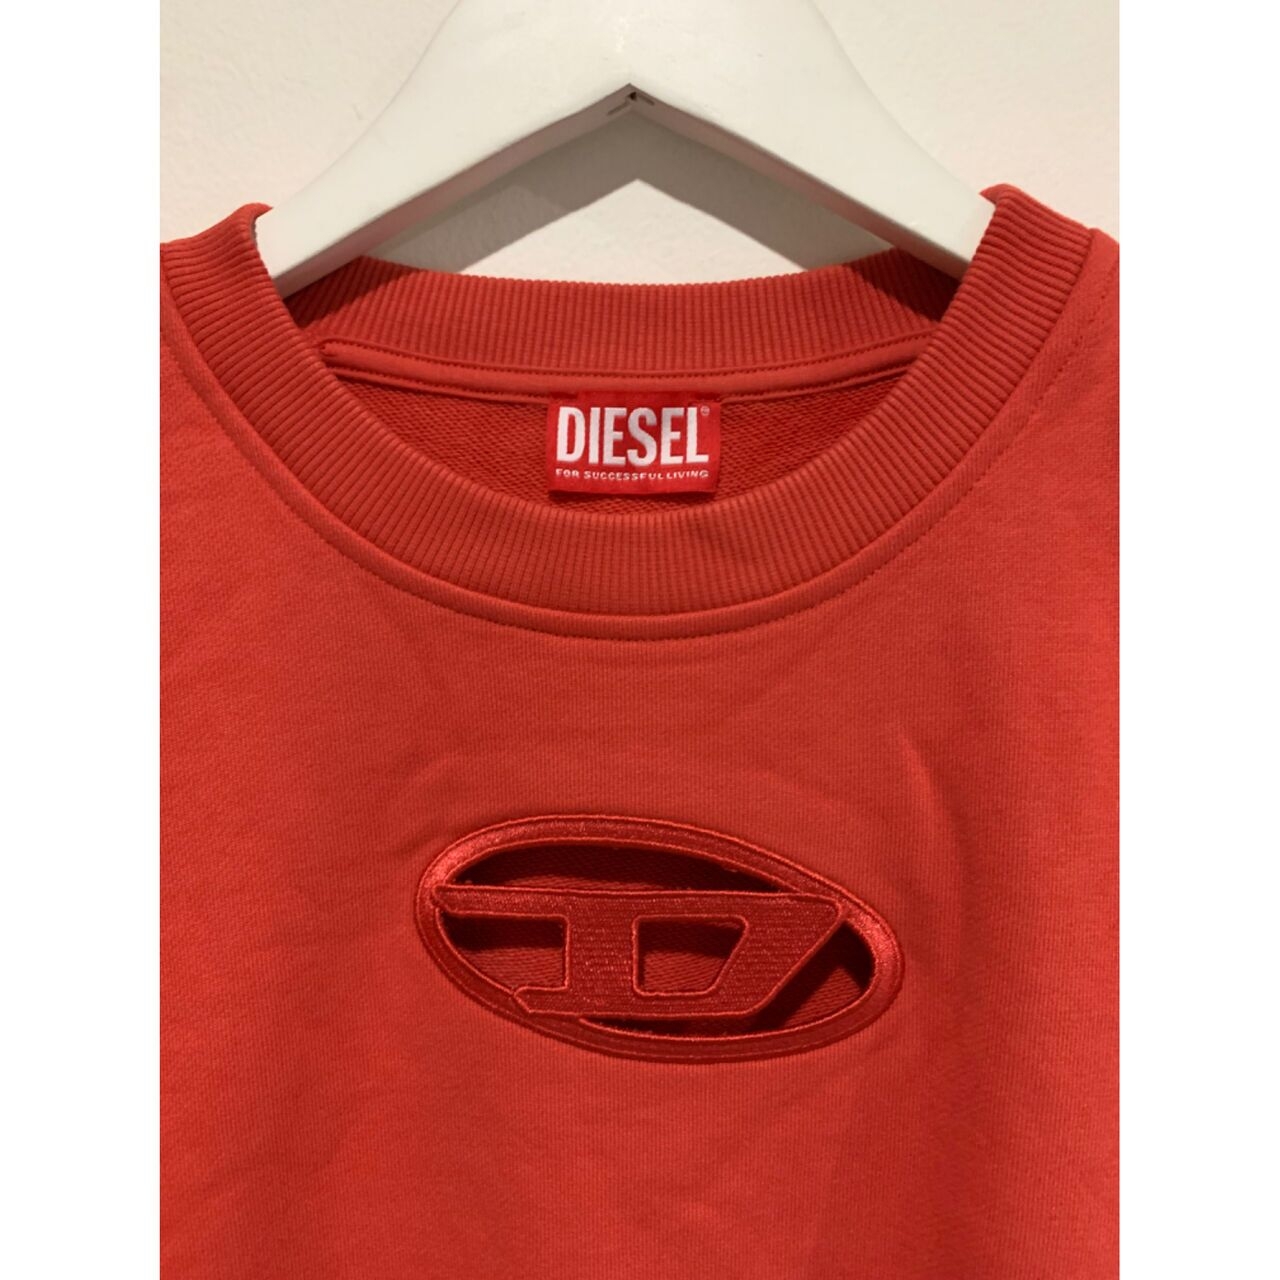 Diesel F-slimmy-od Cutout Sweatshirt